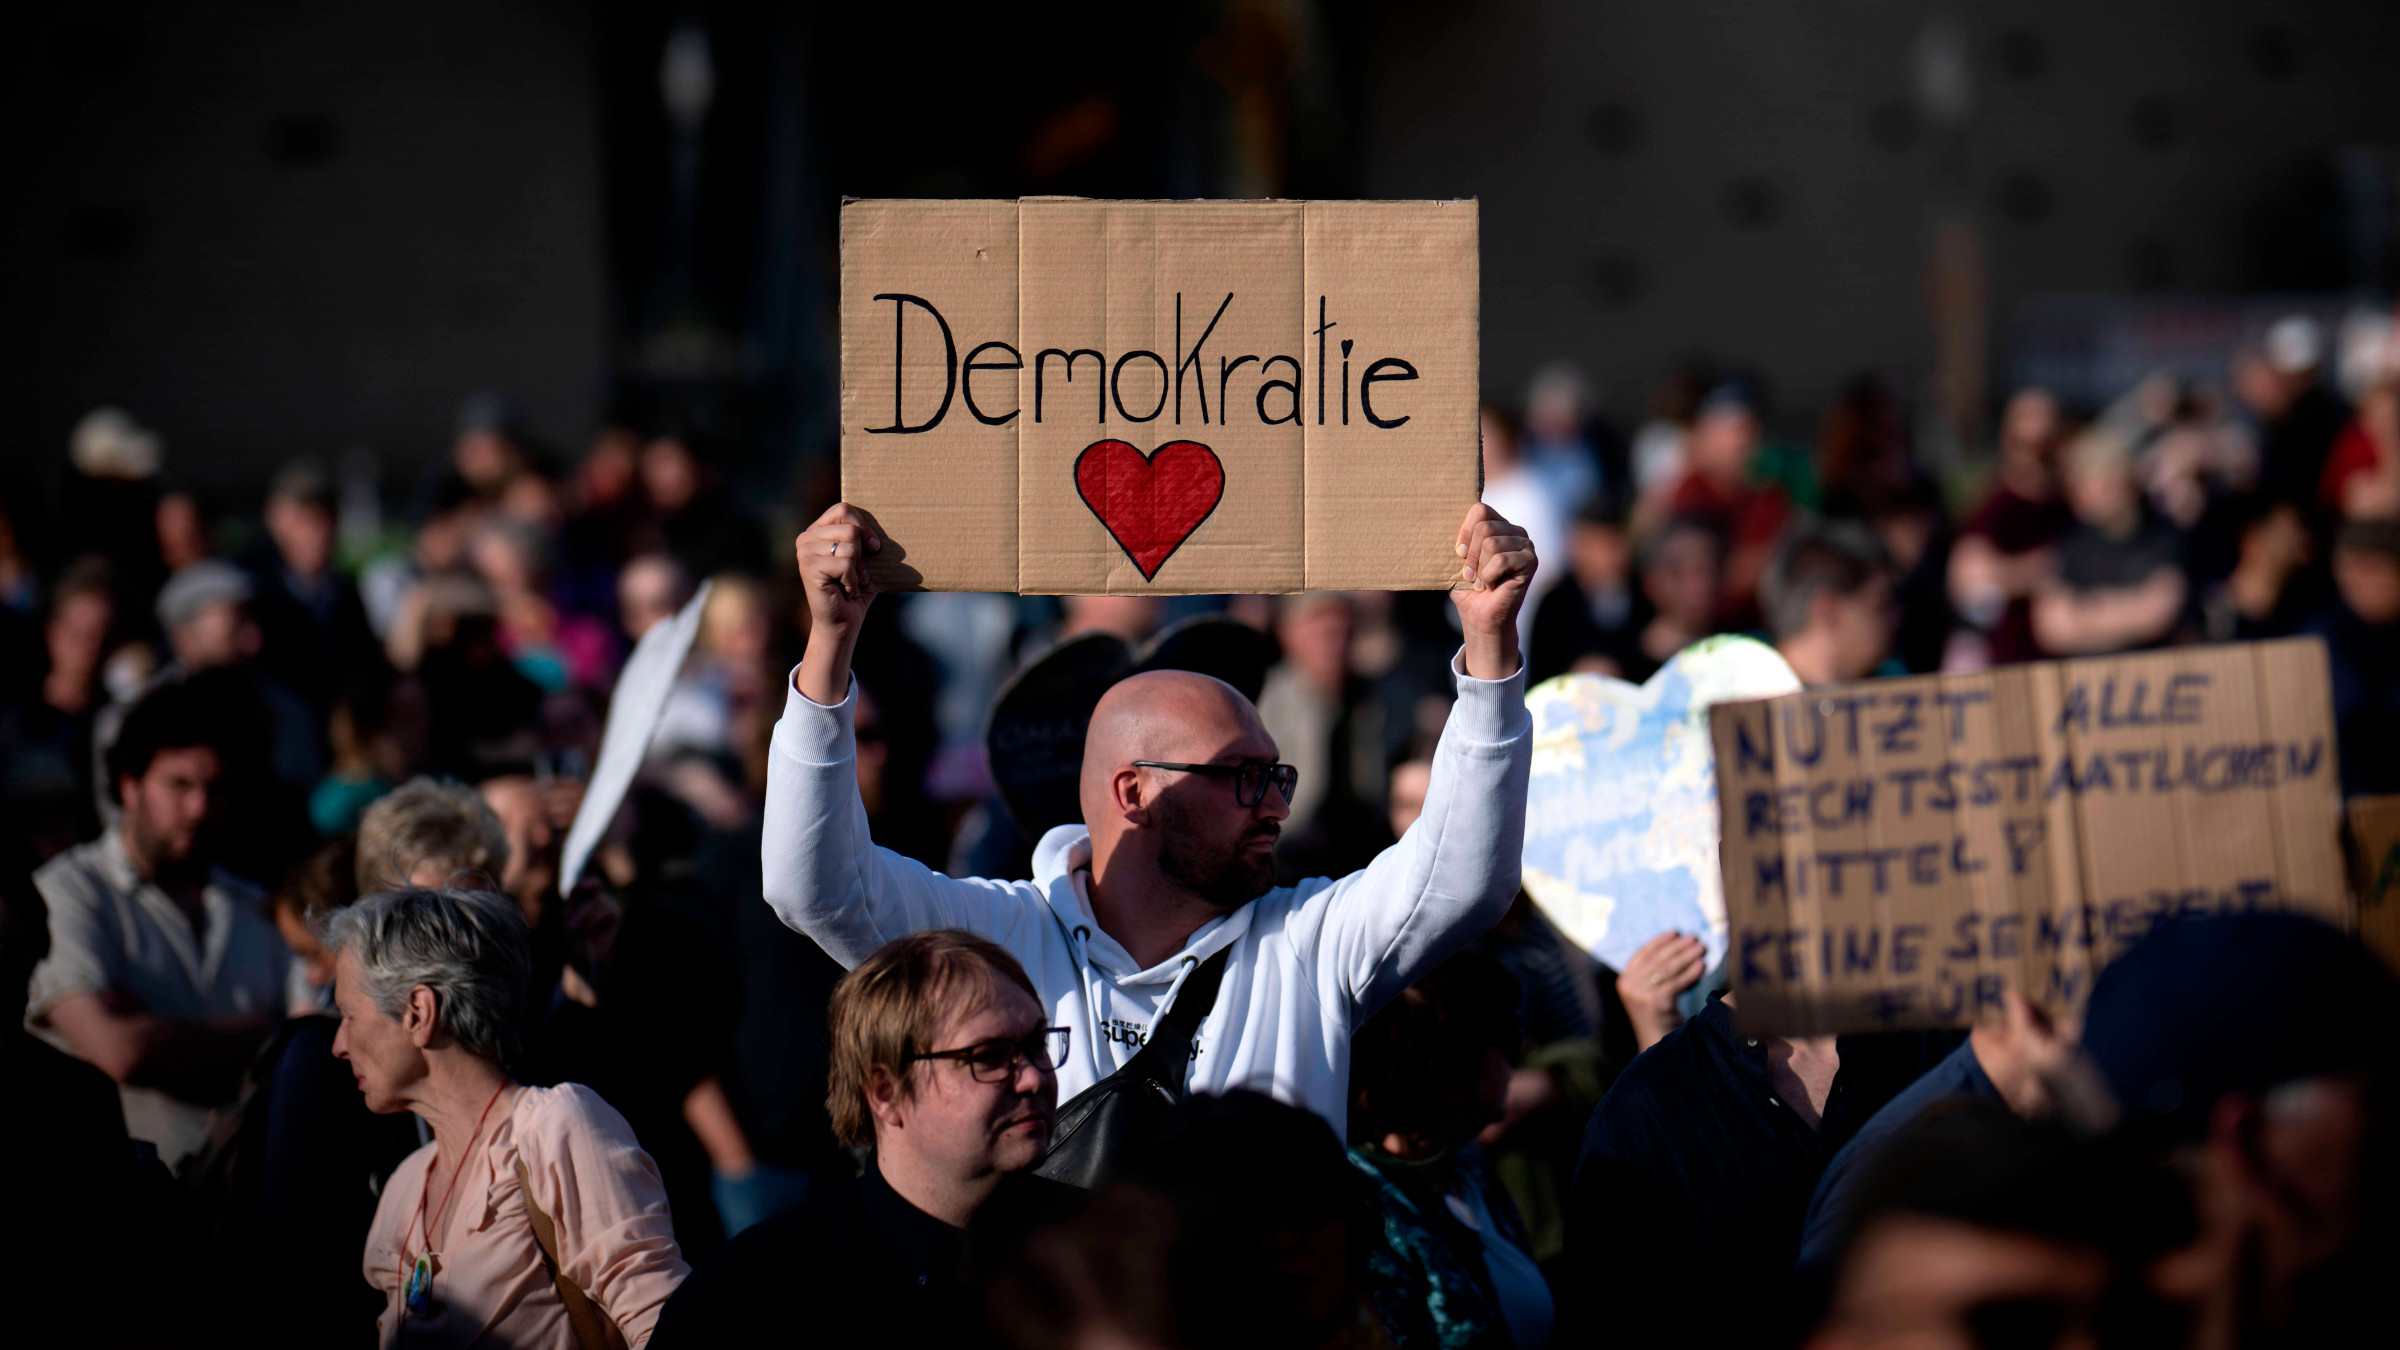 Bei einer Demo gegen rechte Gewalt in Berlin hält eine Person ein Schild hoch, auf dem die Aufschrift"Demokratie" und ein rotes Herz zu sehen sind.